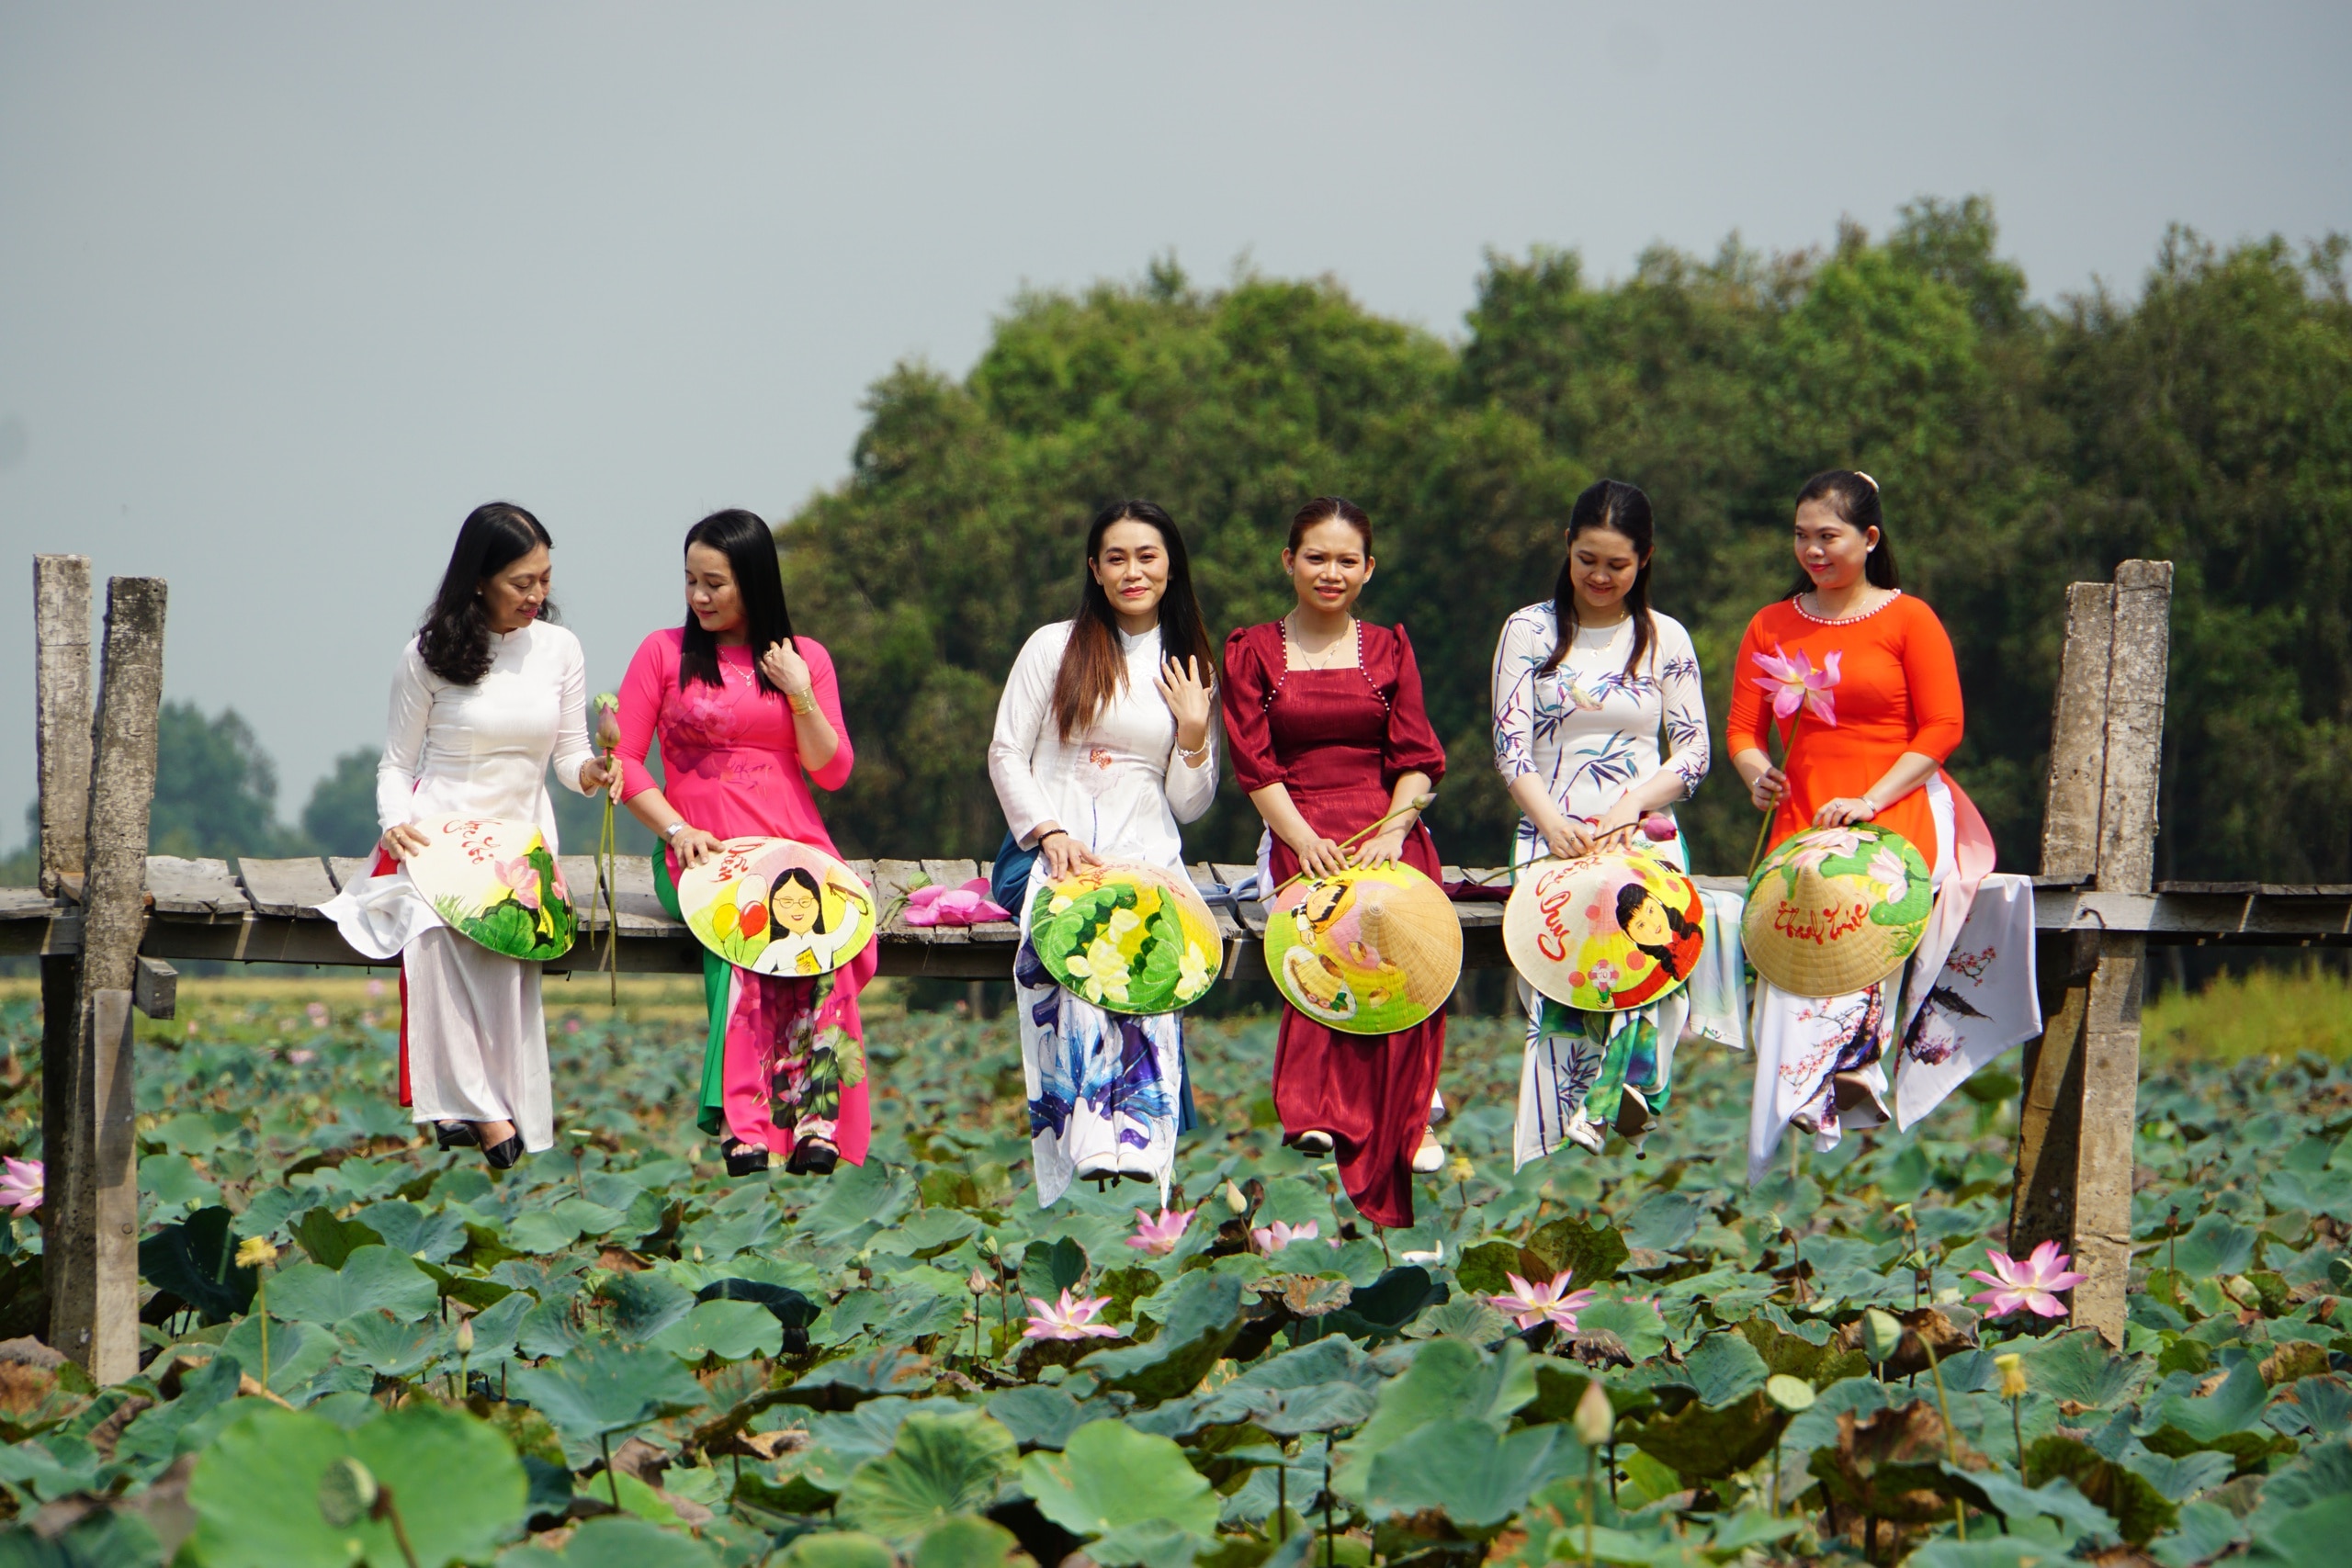 Los turistas toman fotografías en el campo de lotos de Thap Muoi (Dong Thap)